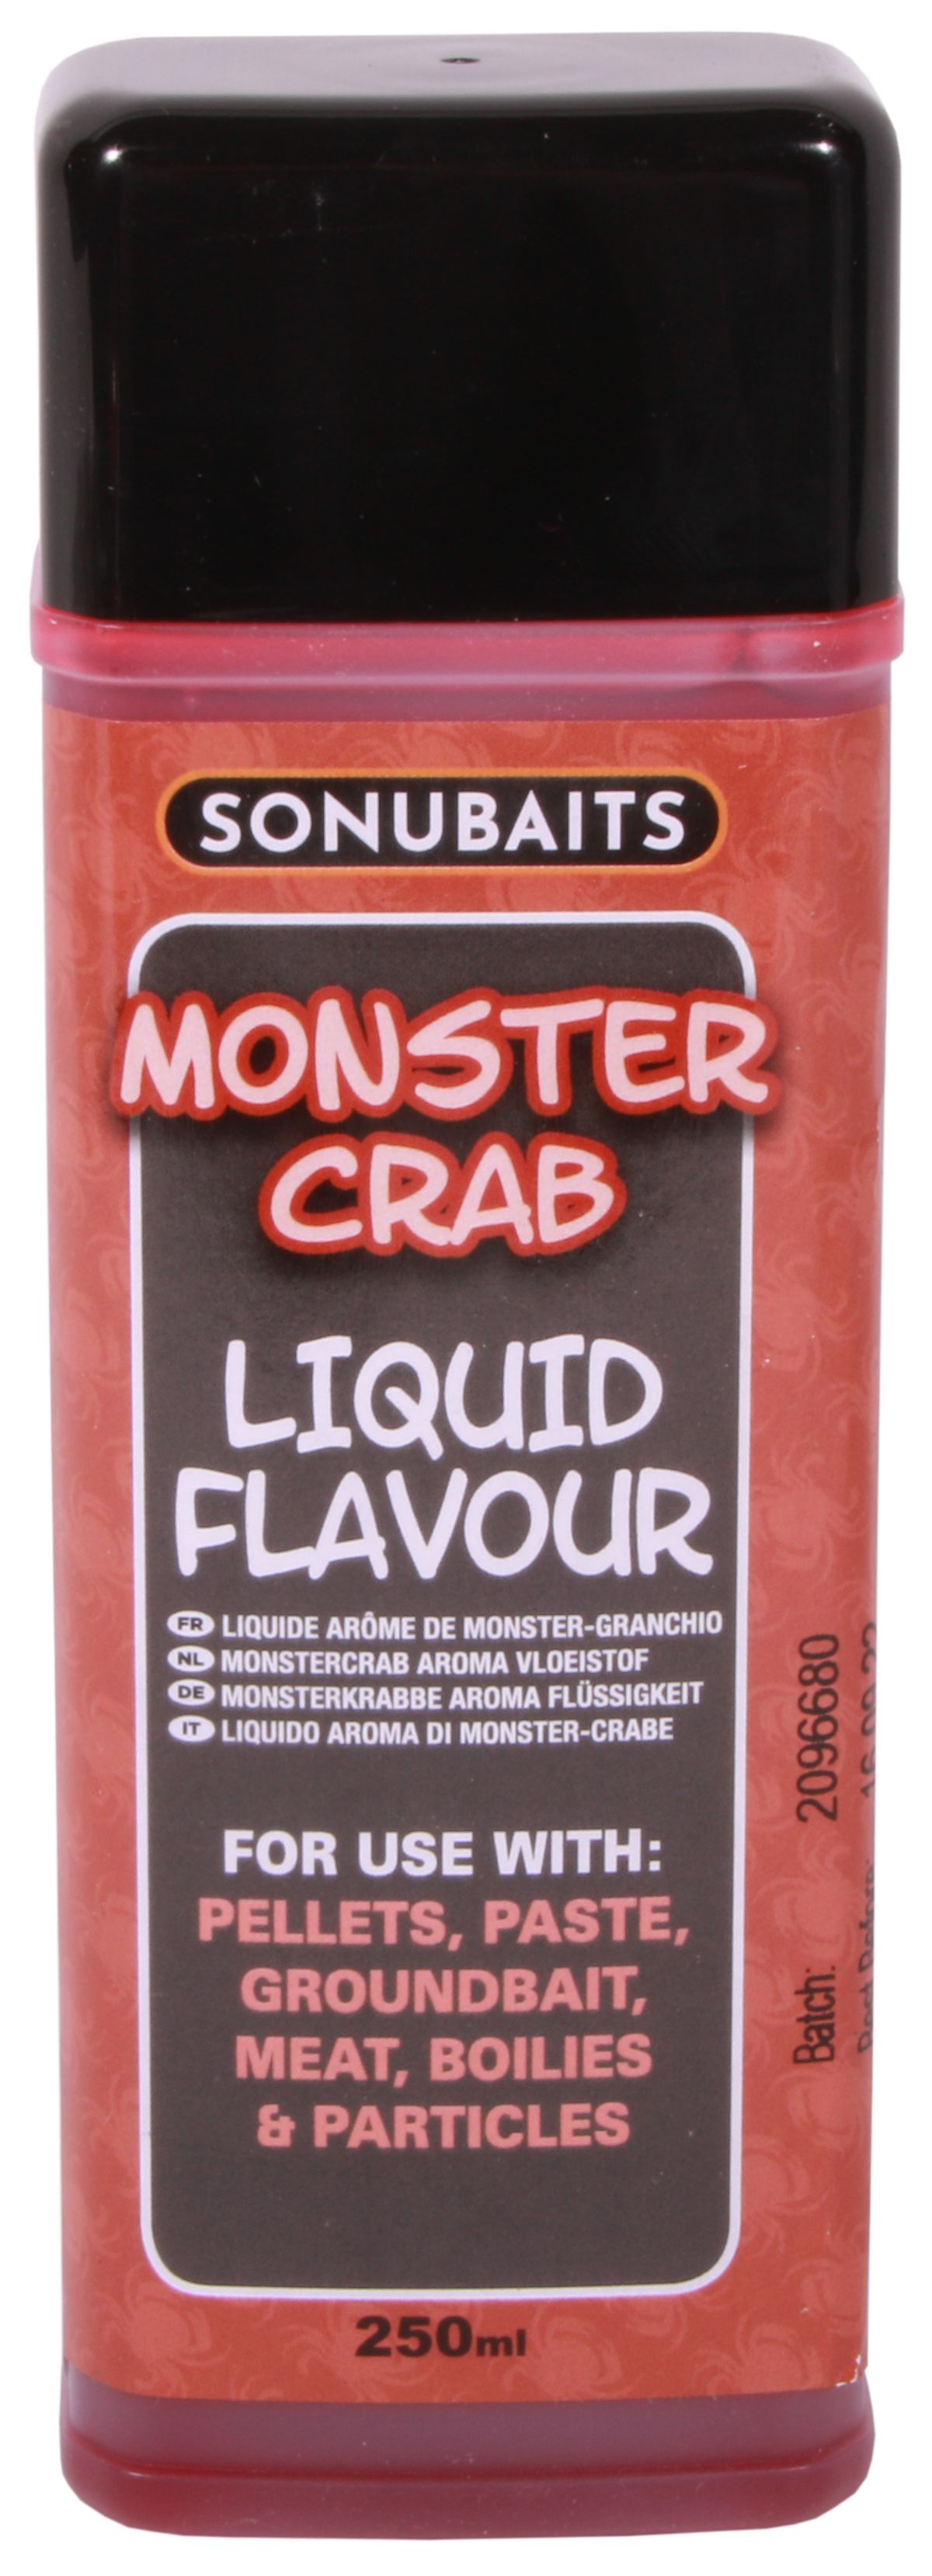 Sonubaits Liquid Flavour